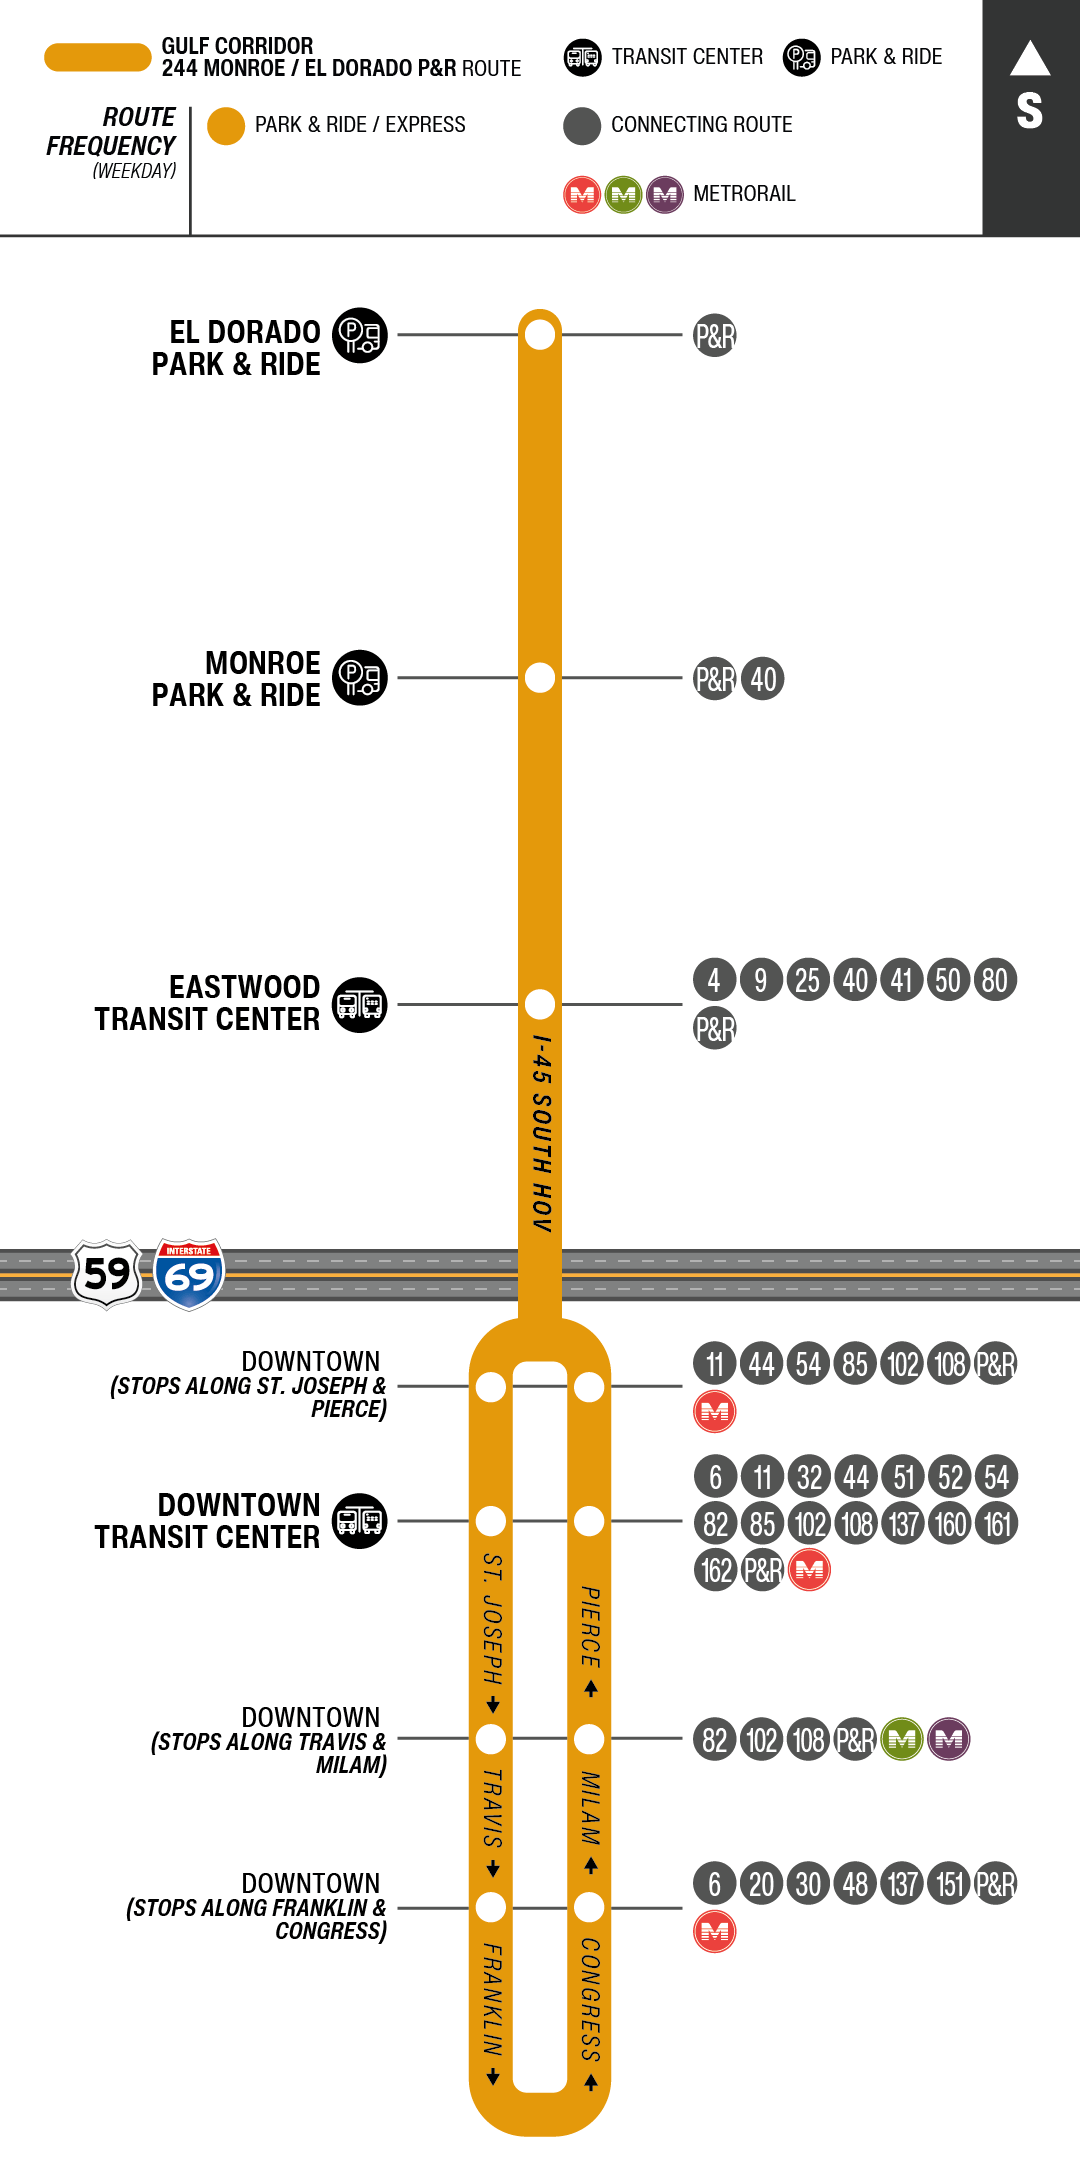 Route map for 244 Monroe / El Dorado Park & Ride bus